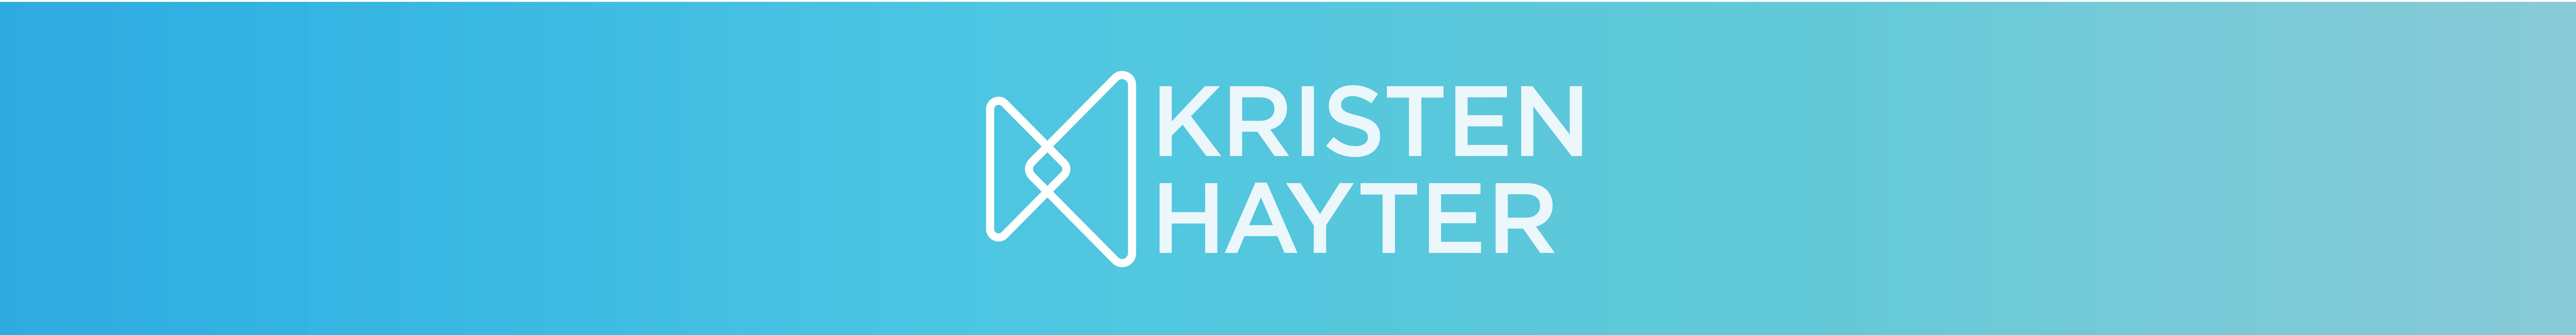 Kristen Hayter's profile banner